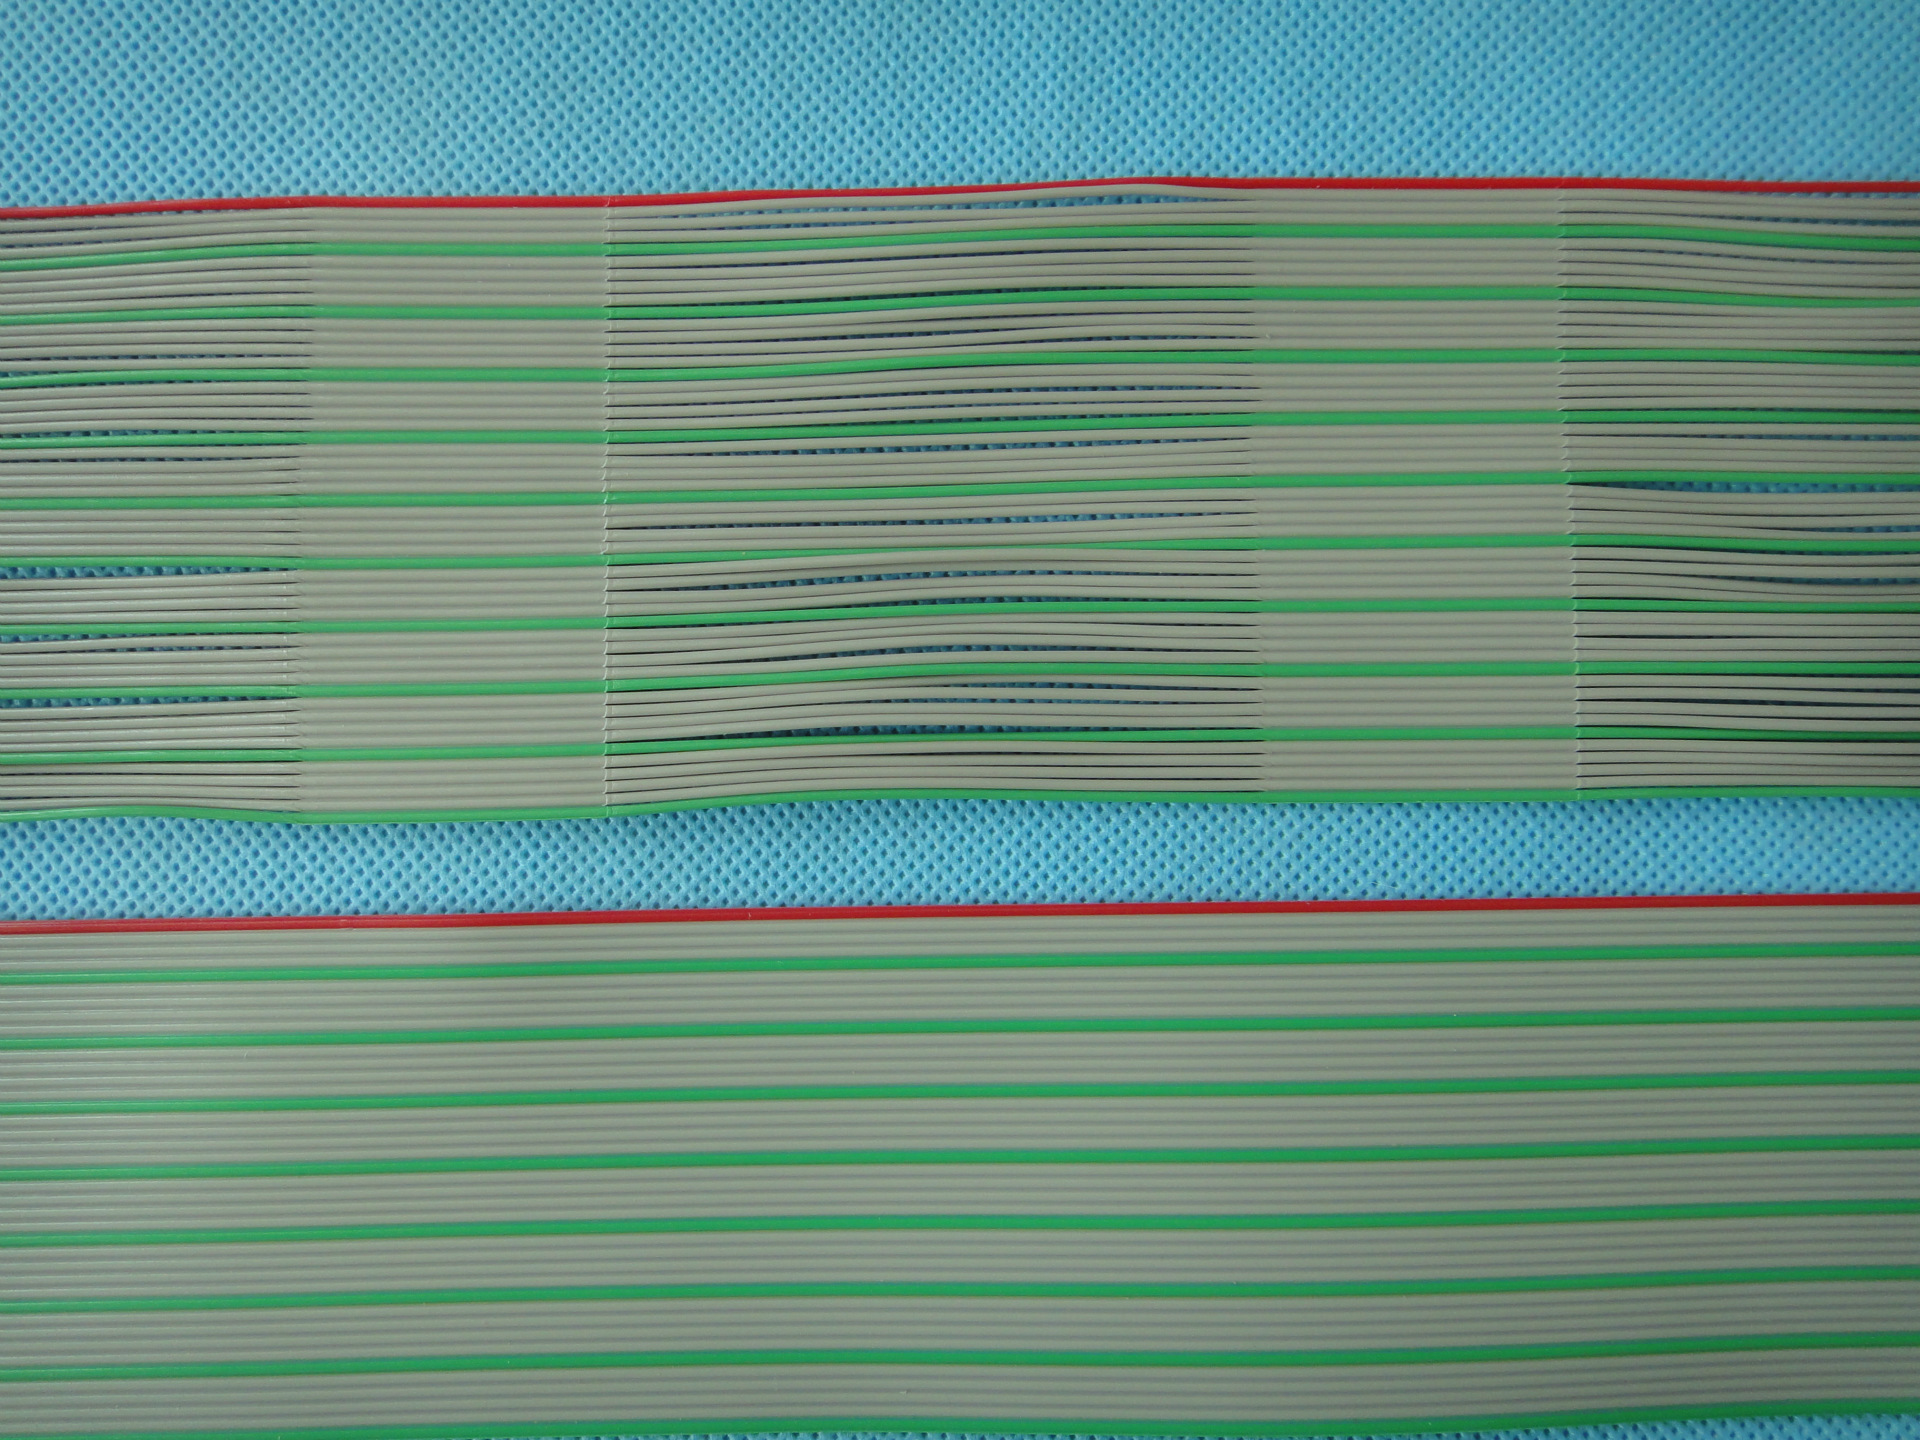 2651排线  彩排线  红灰绿排线 30/70分叉排线 40芯 61米包装 28A